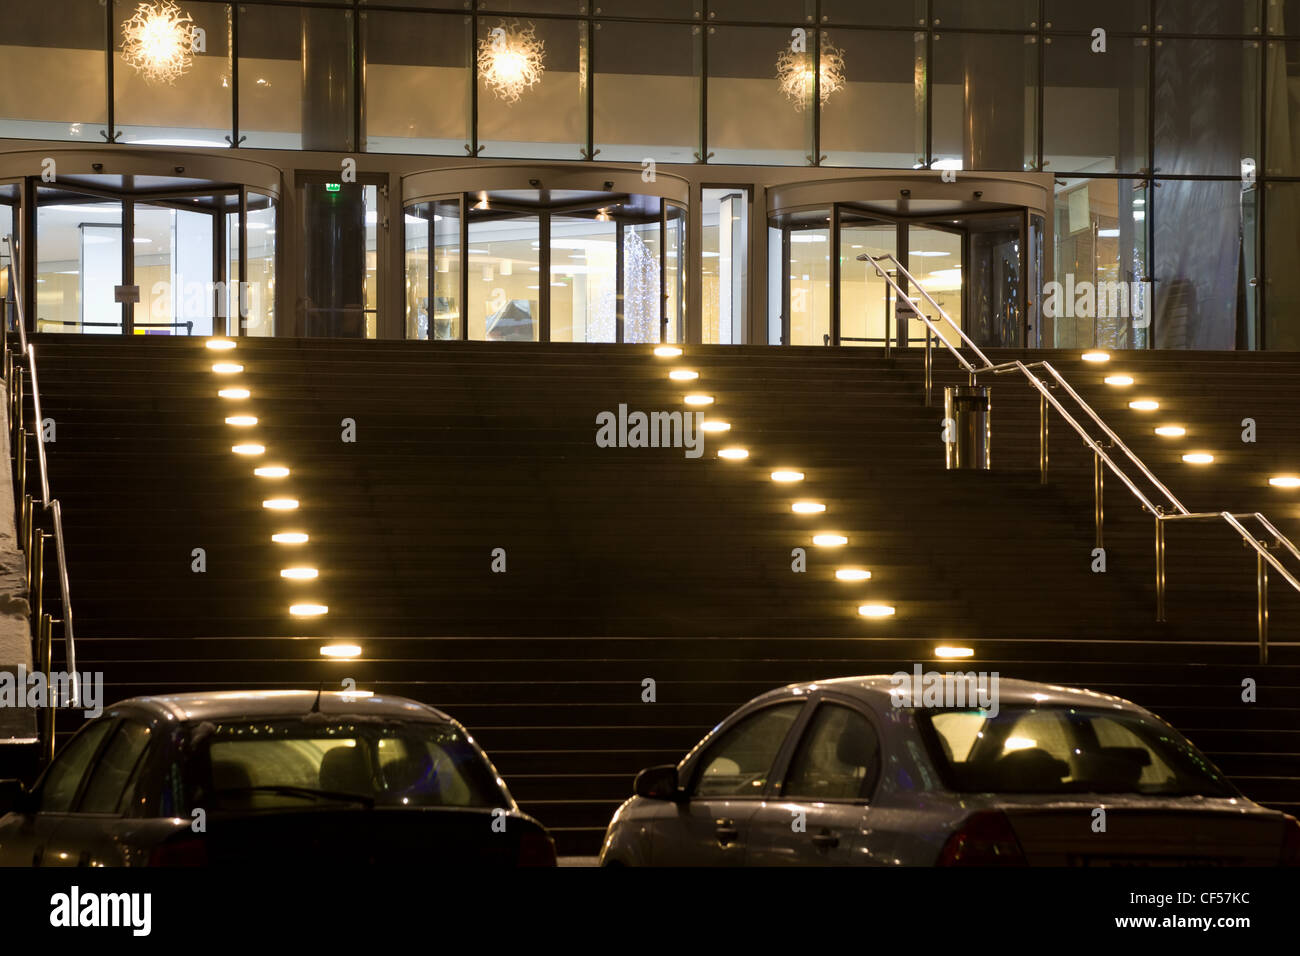 Grande entrée dans immeuble de bureaux modernes dans la nuit, deux voitures sur le parking Banque D'Images